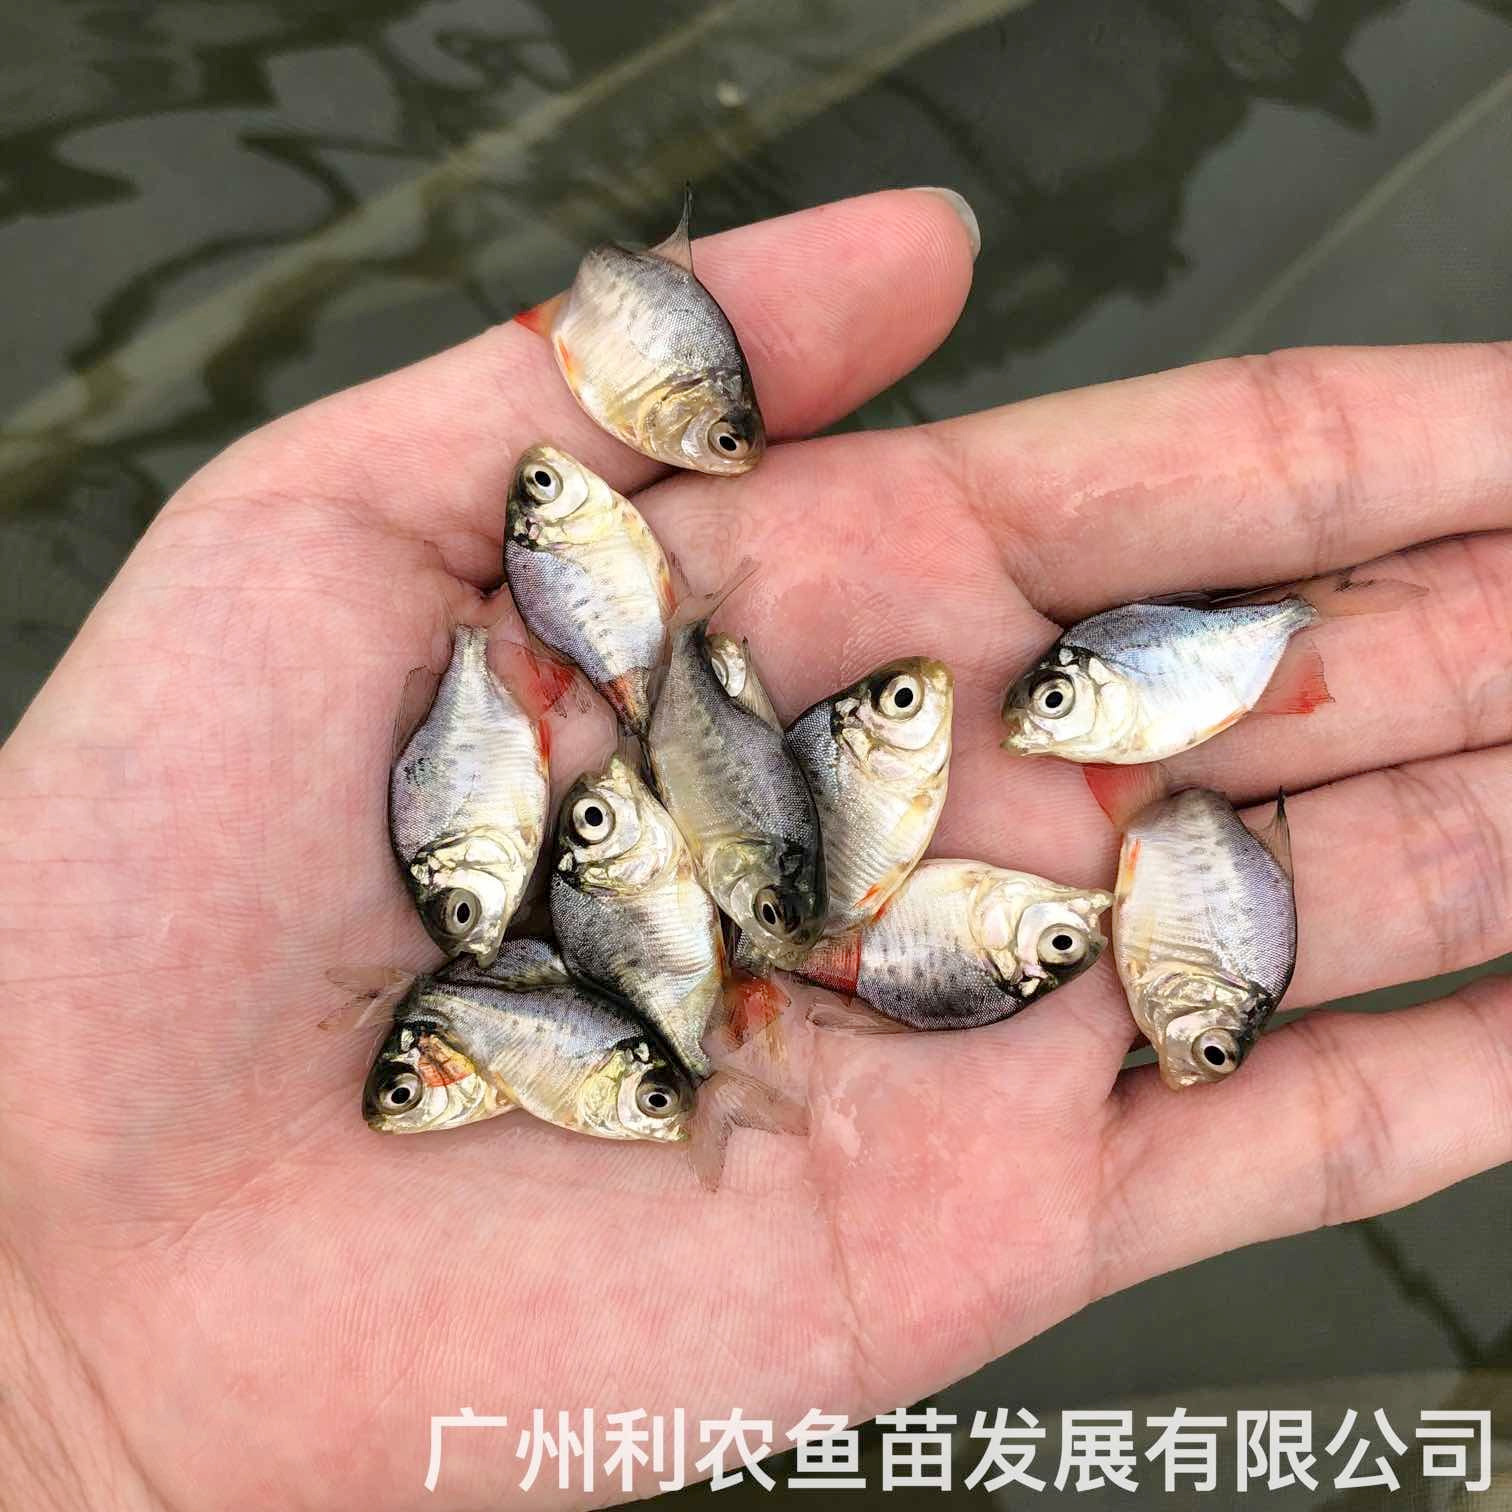 广西柳州红鲳鱼苗出售广西崇左淡水白鲳鱼苗养殖基地